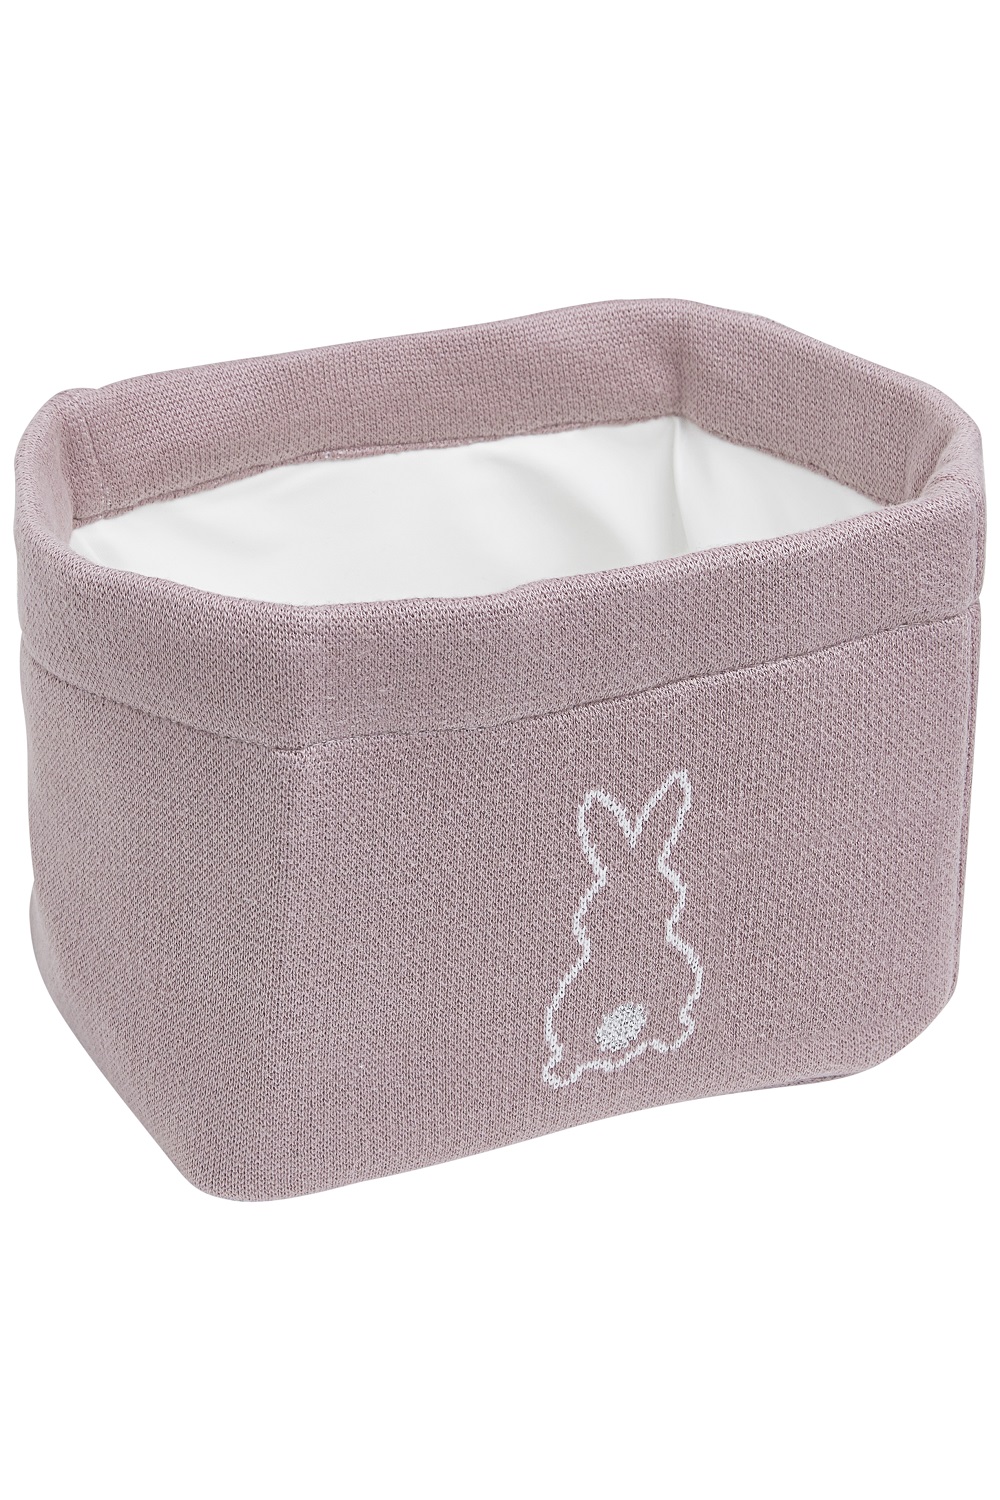 Meyco X Mrs. Keizer Storage Basket Rabbit - Lilac - Medium